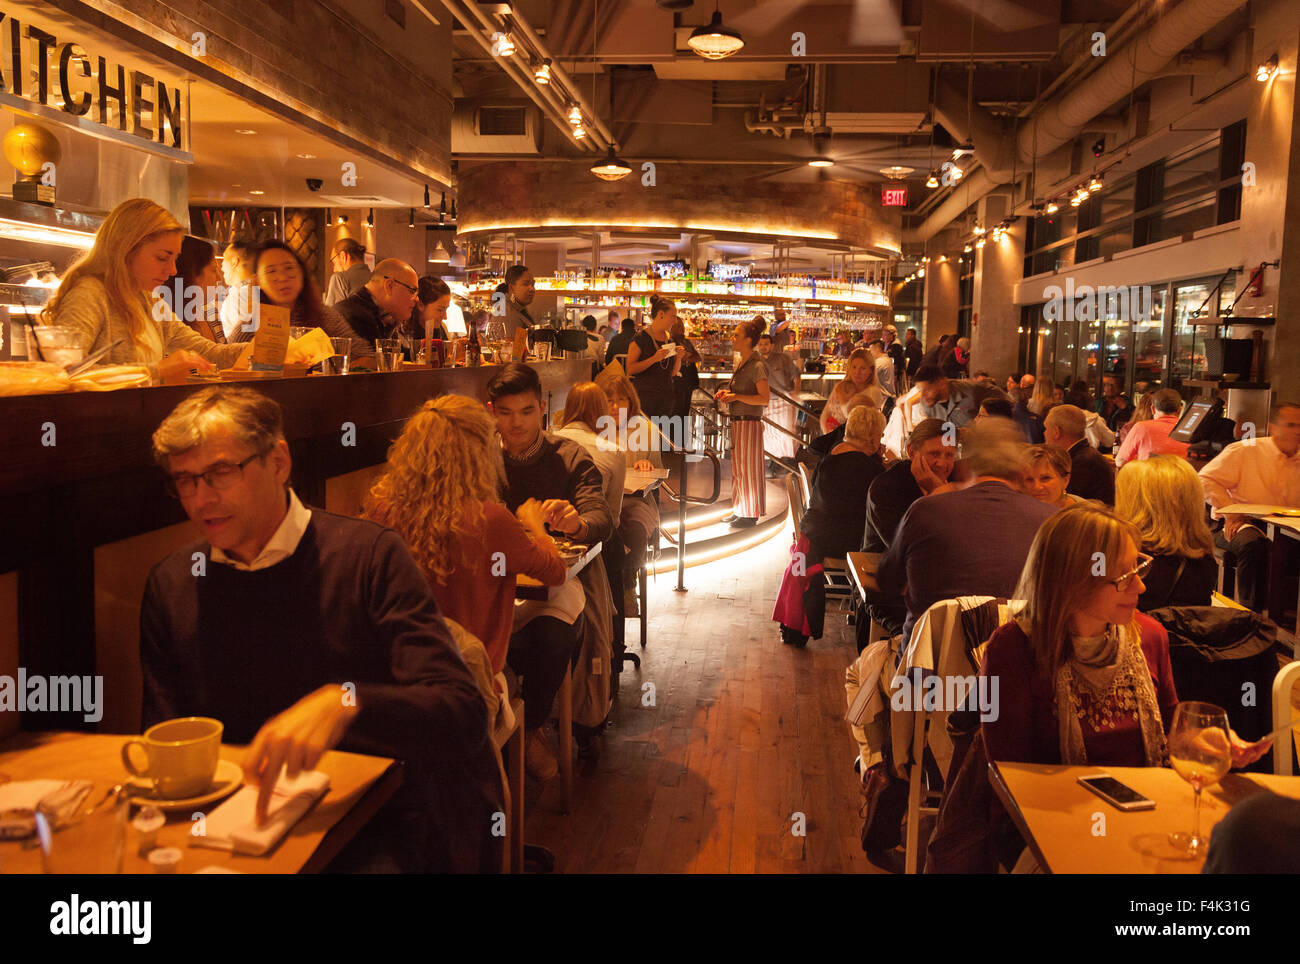 Les gens de manger dans le restaurant de fruits de mer d'Harbourside juridique populaire, Boston, Massachusetts, USA Banque D'Images